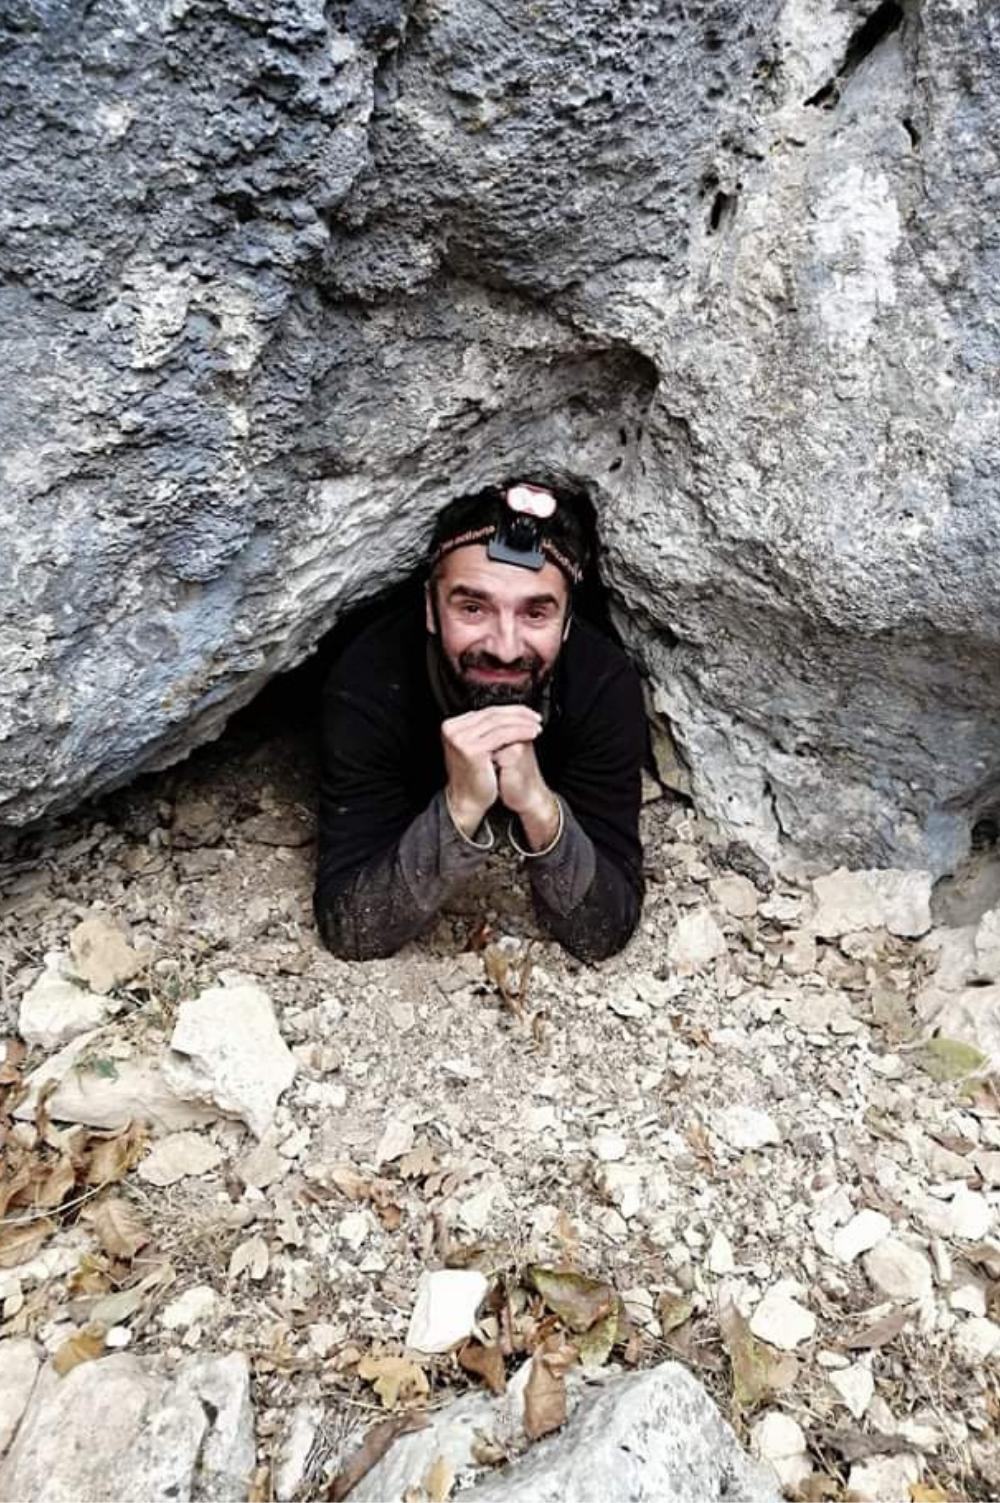 Dečko u opremi za istrazivanje pećina viri iz jedne male pećine.